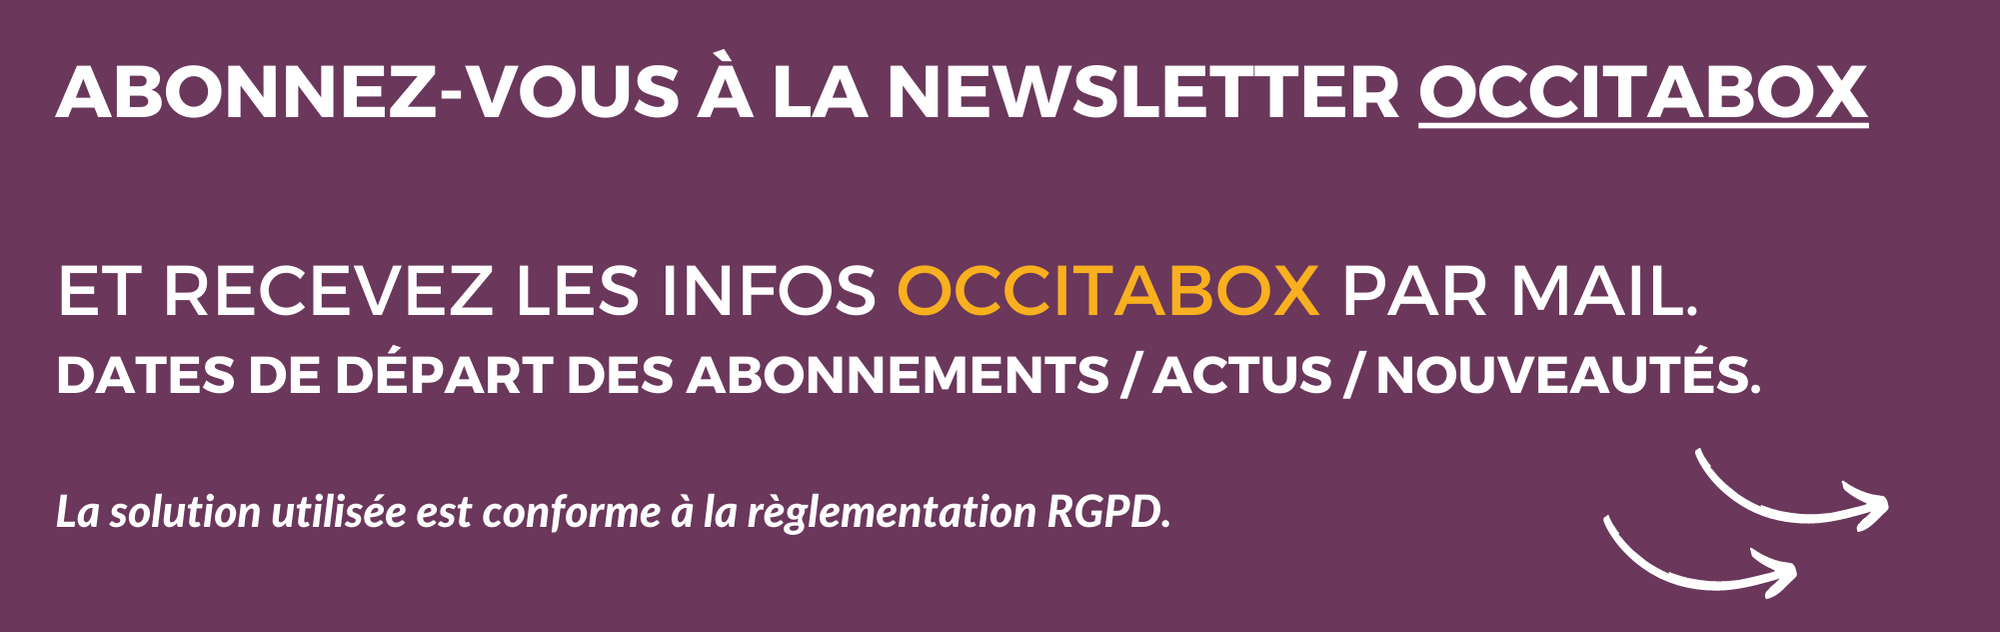 2699-abonnez-vous-a-la-newsletter-occitabox-1690197868726.png